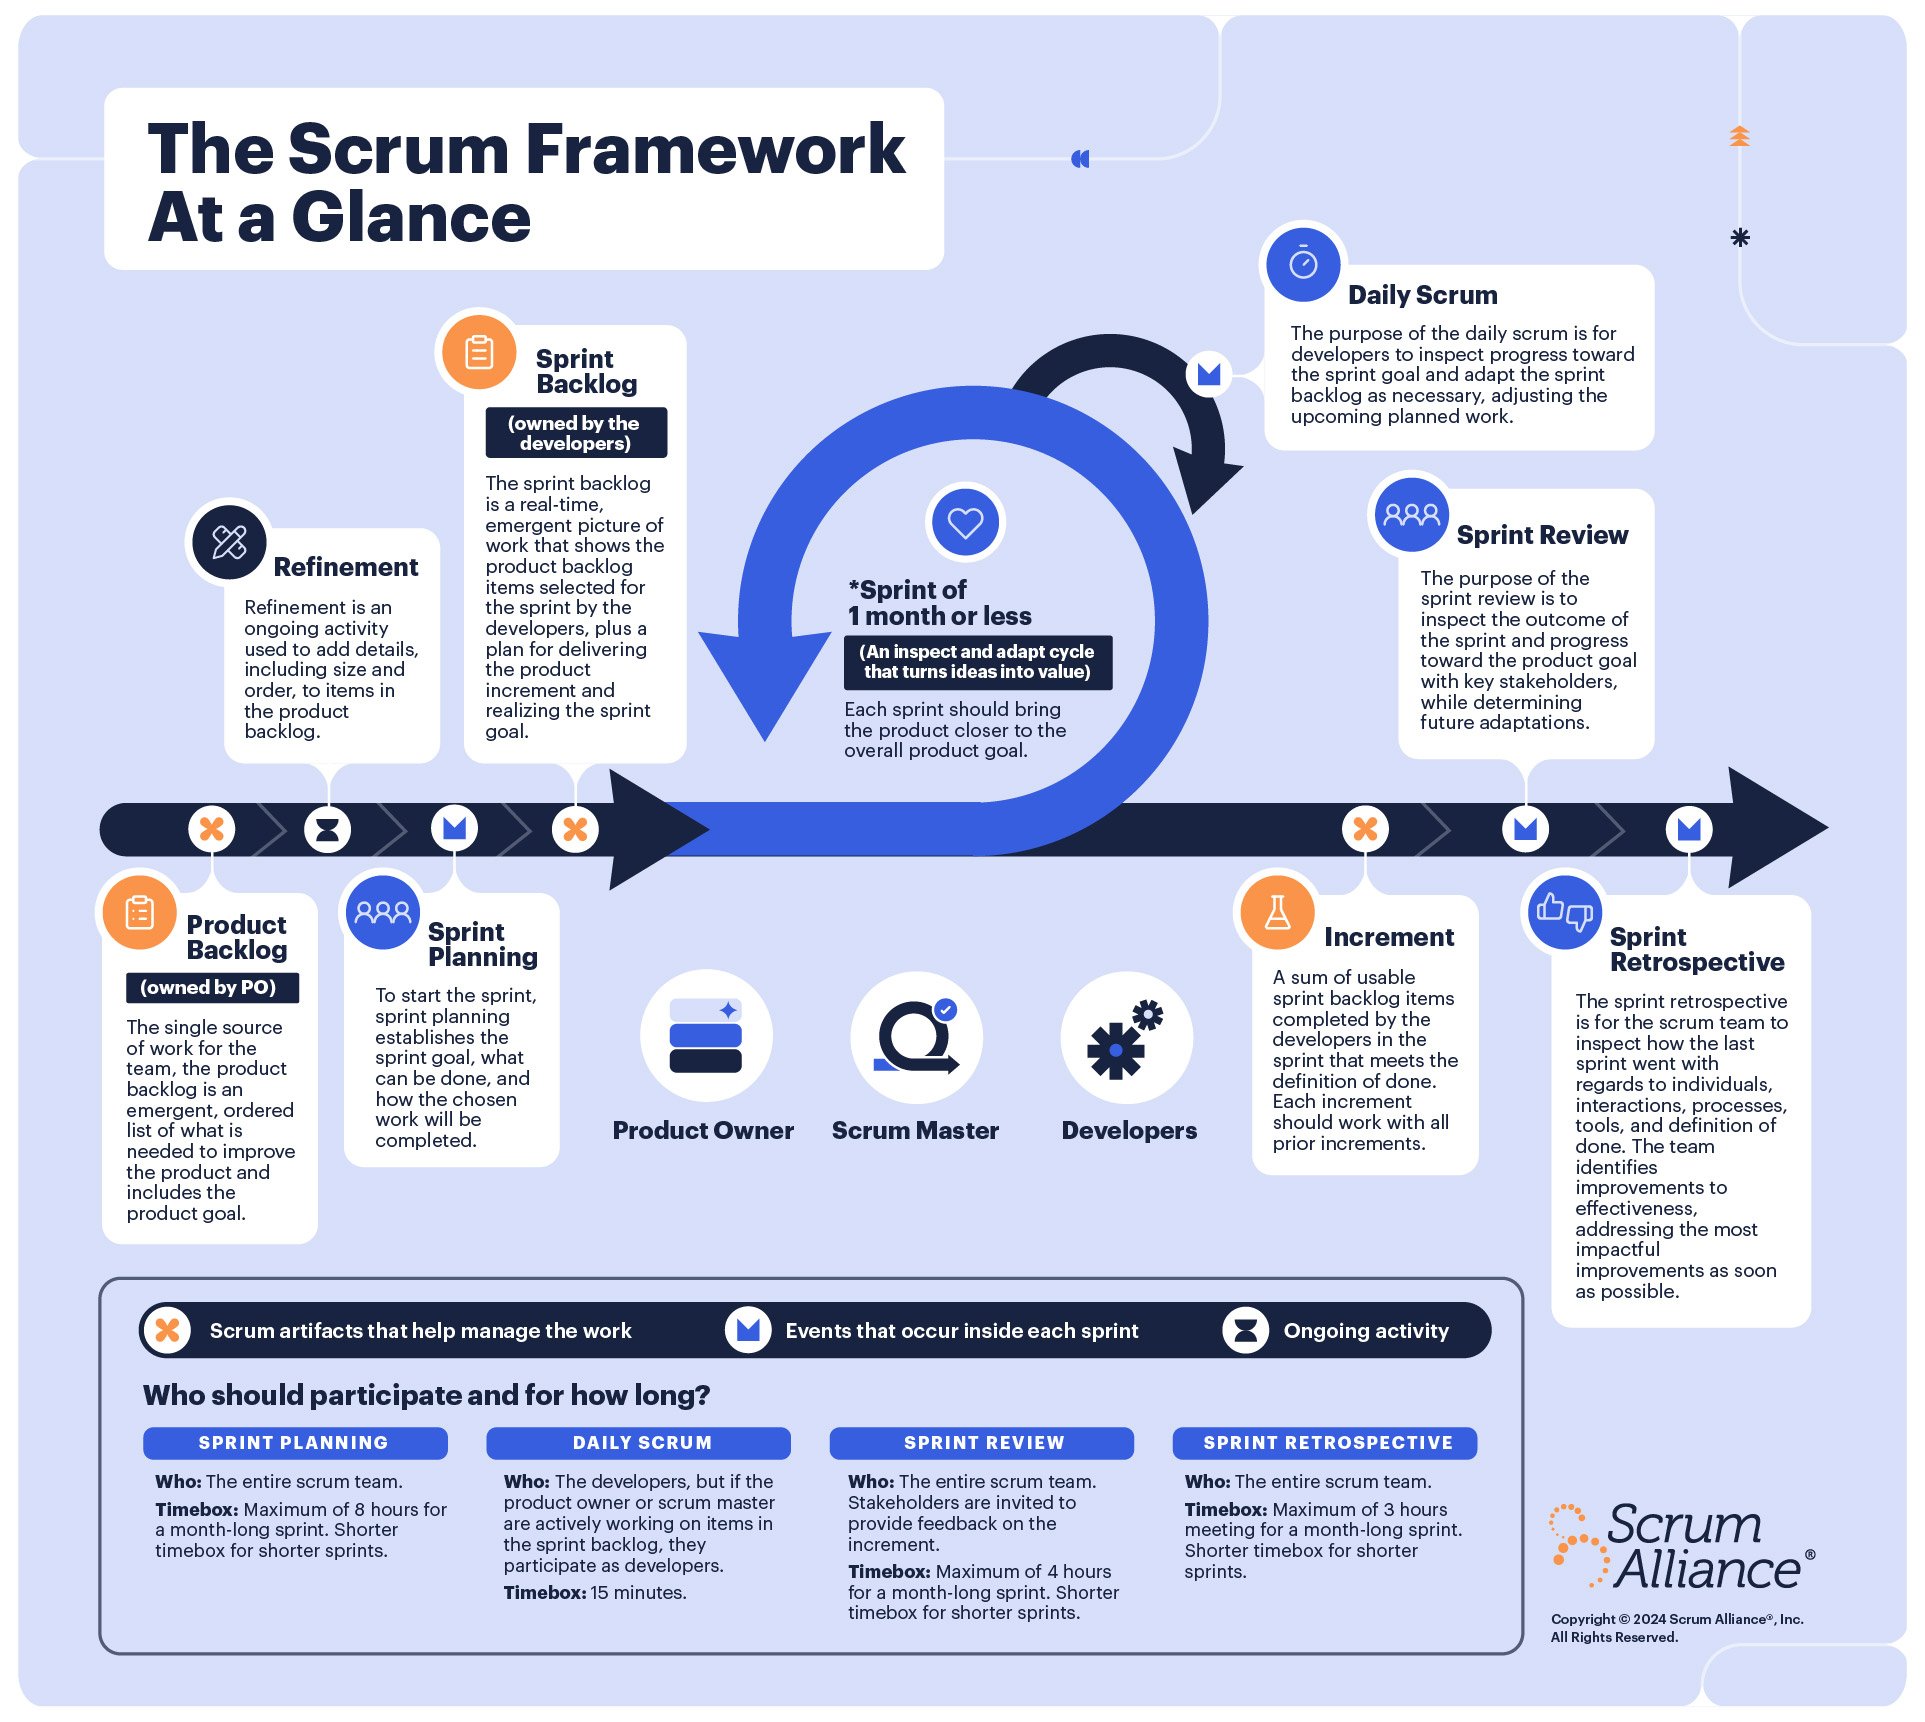 An infographic describing the scrum framework